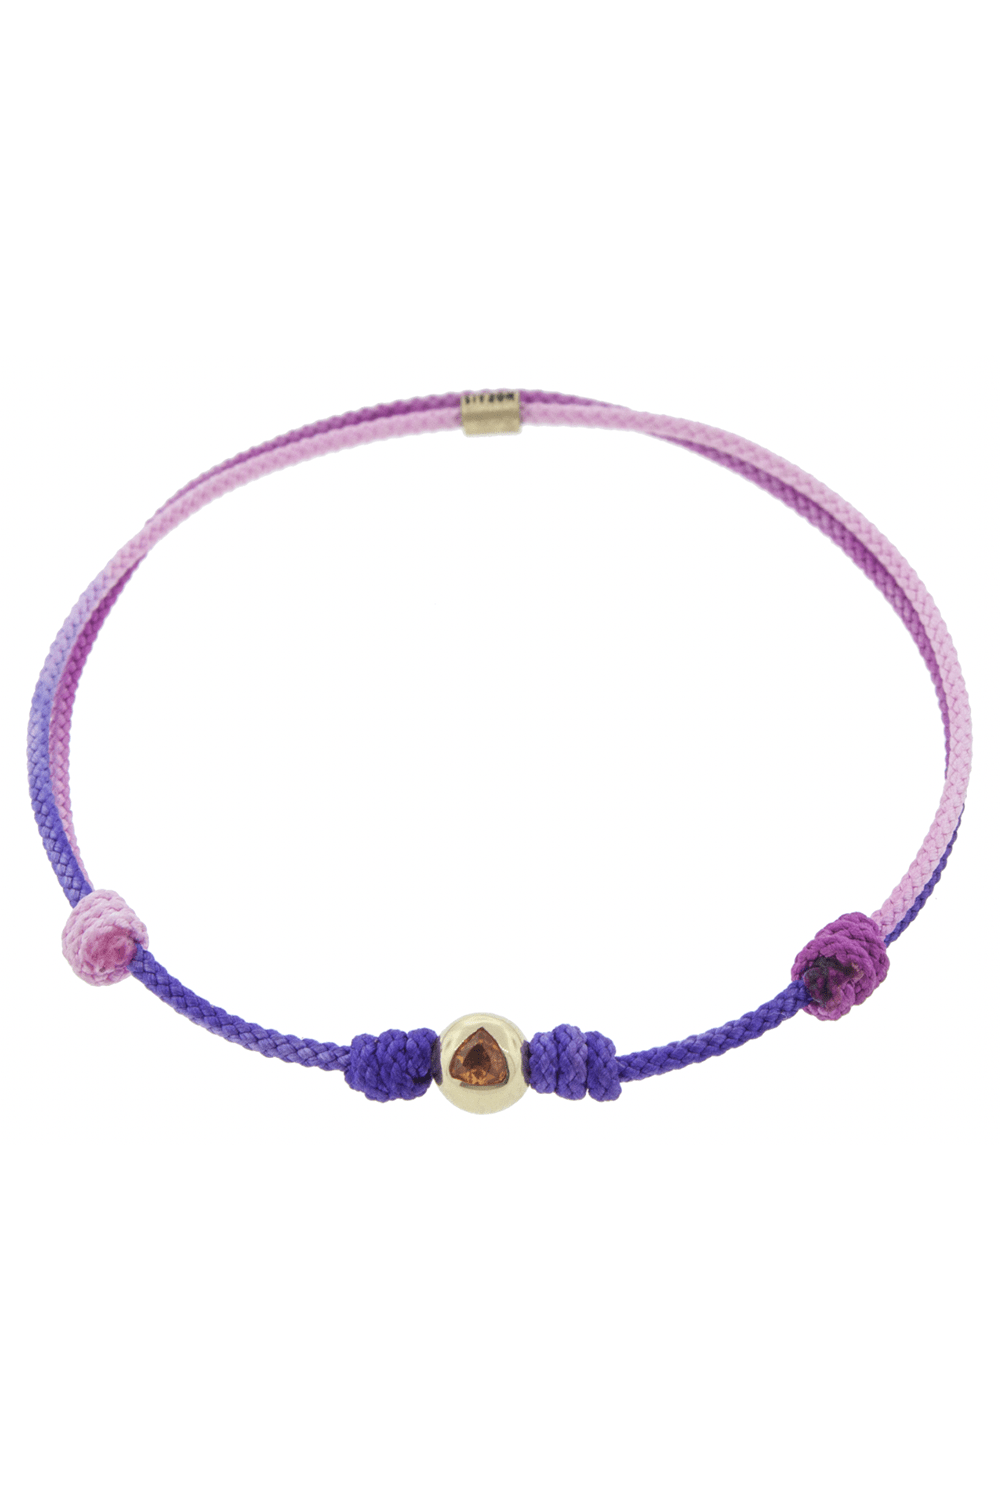 LUIS MORAIS-Pink Sapphire Trillion Cord Bracelet-YELLOW GOLD